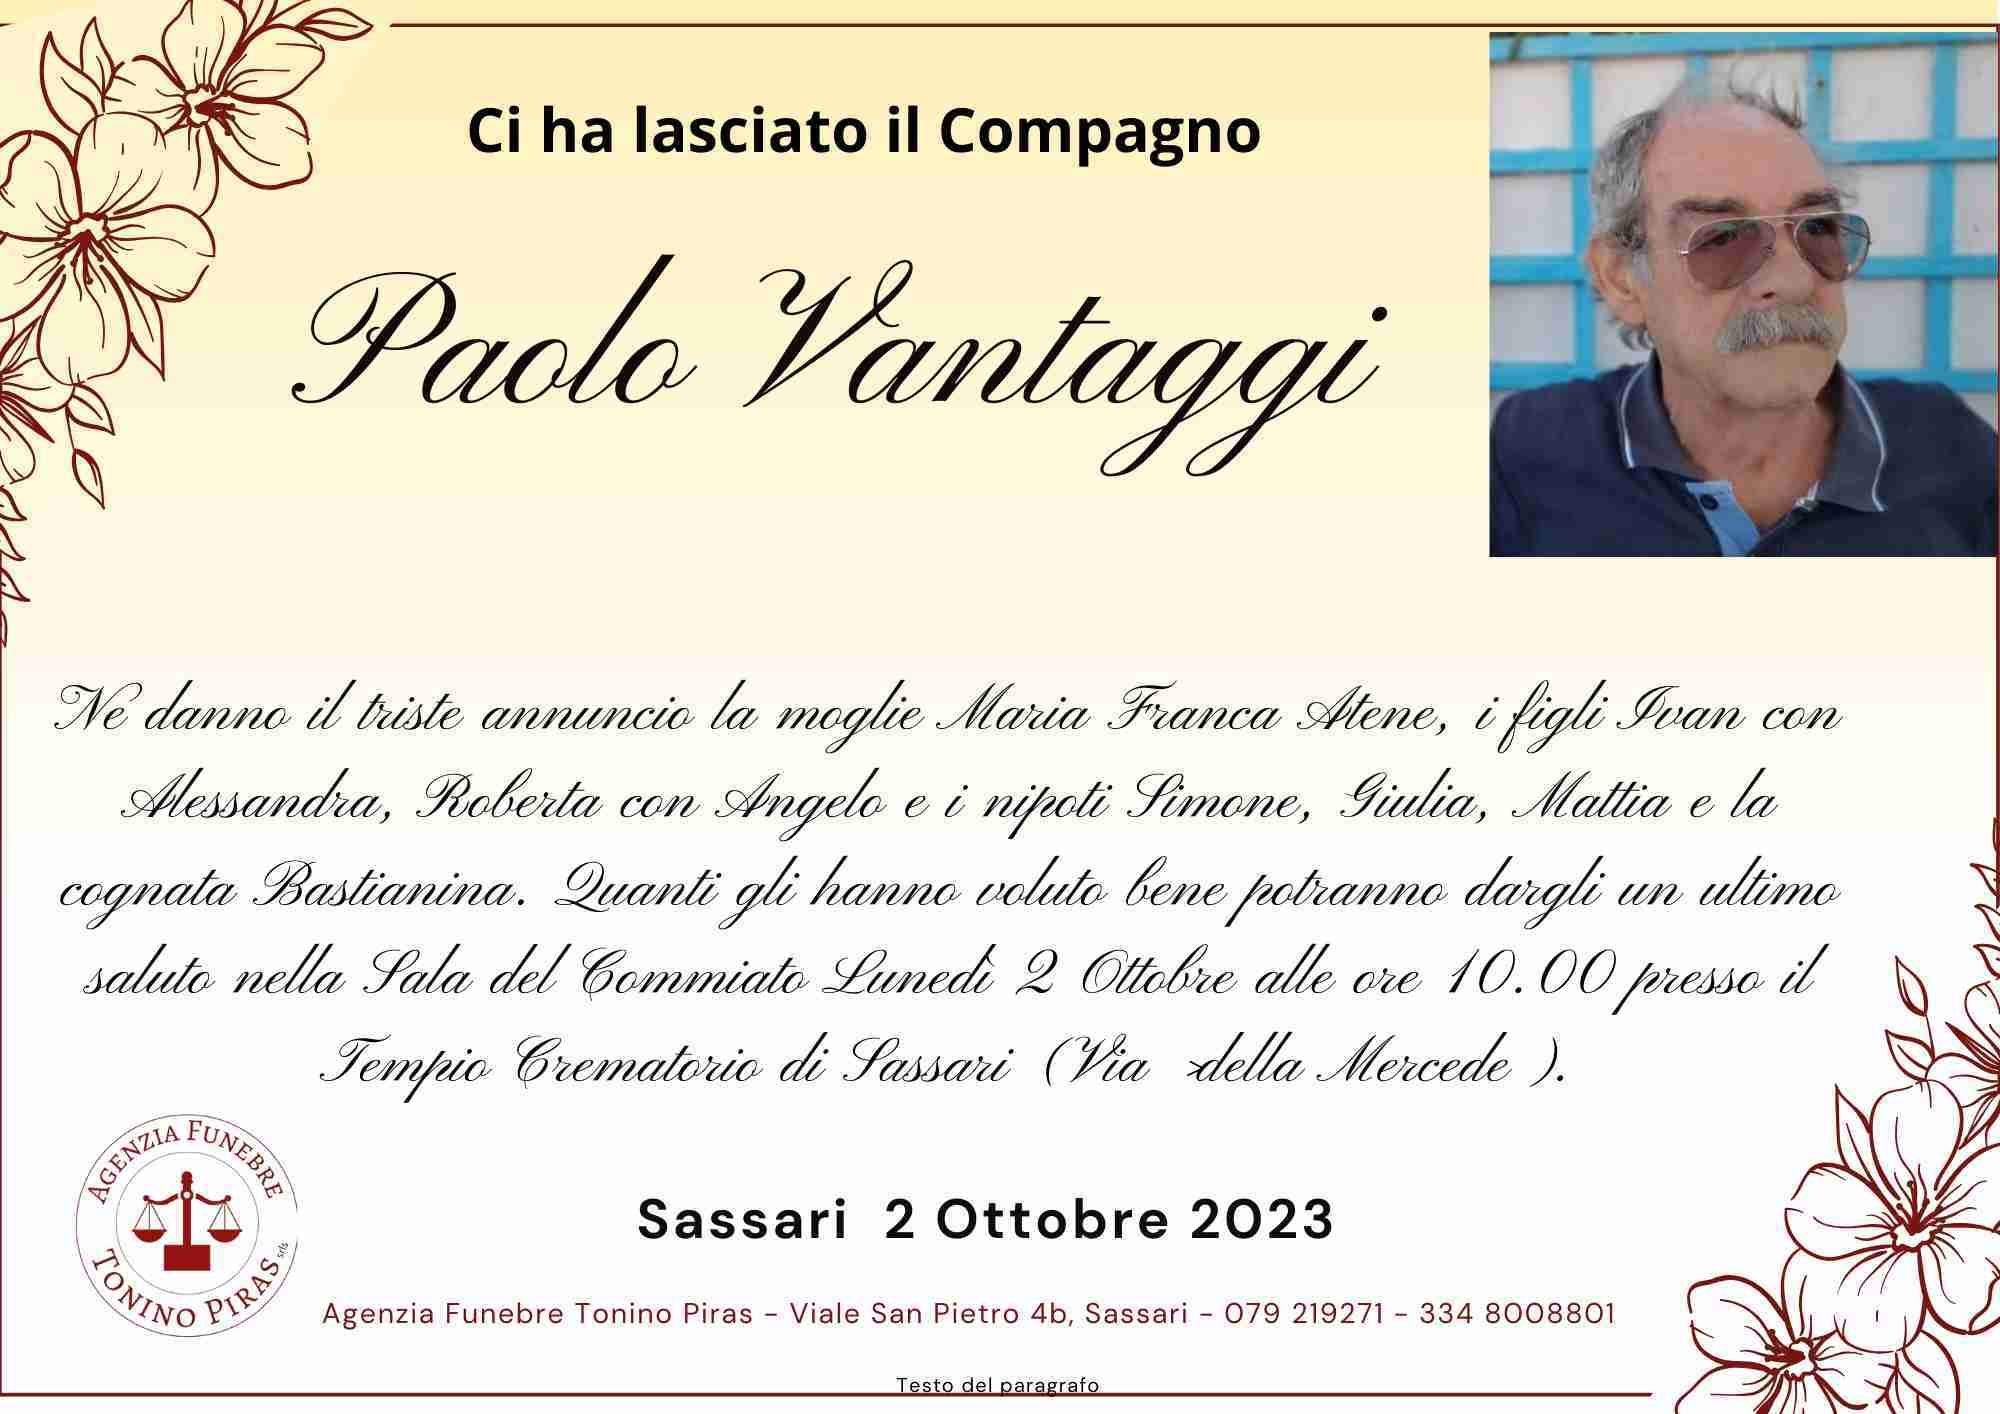 Paolo Vantaggi